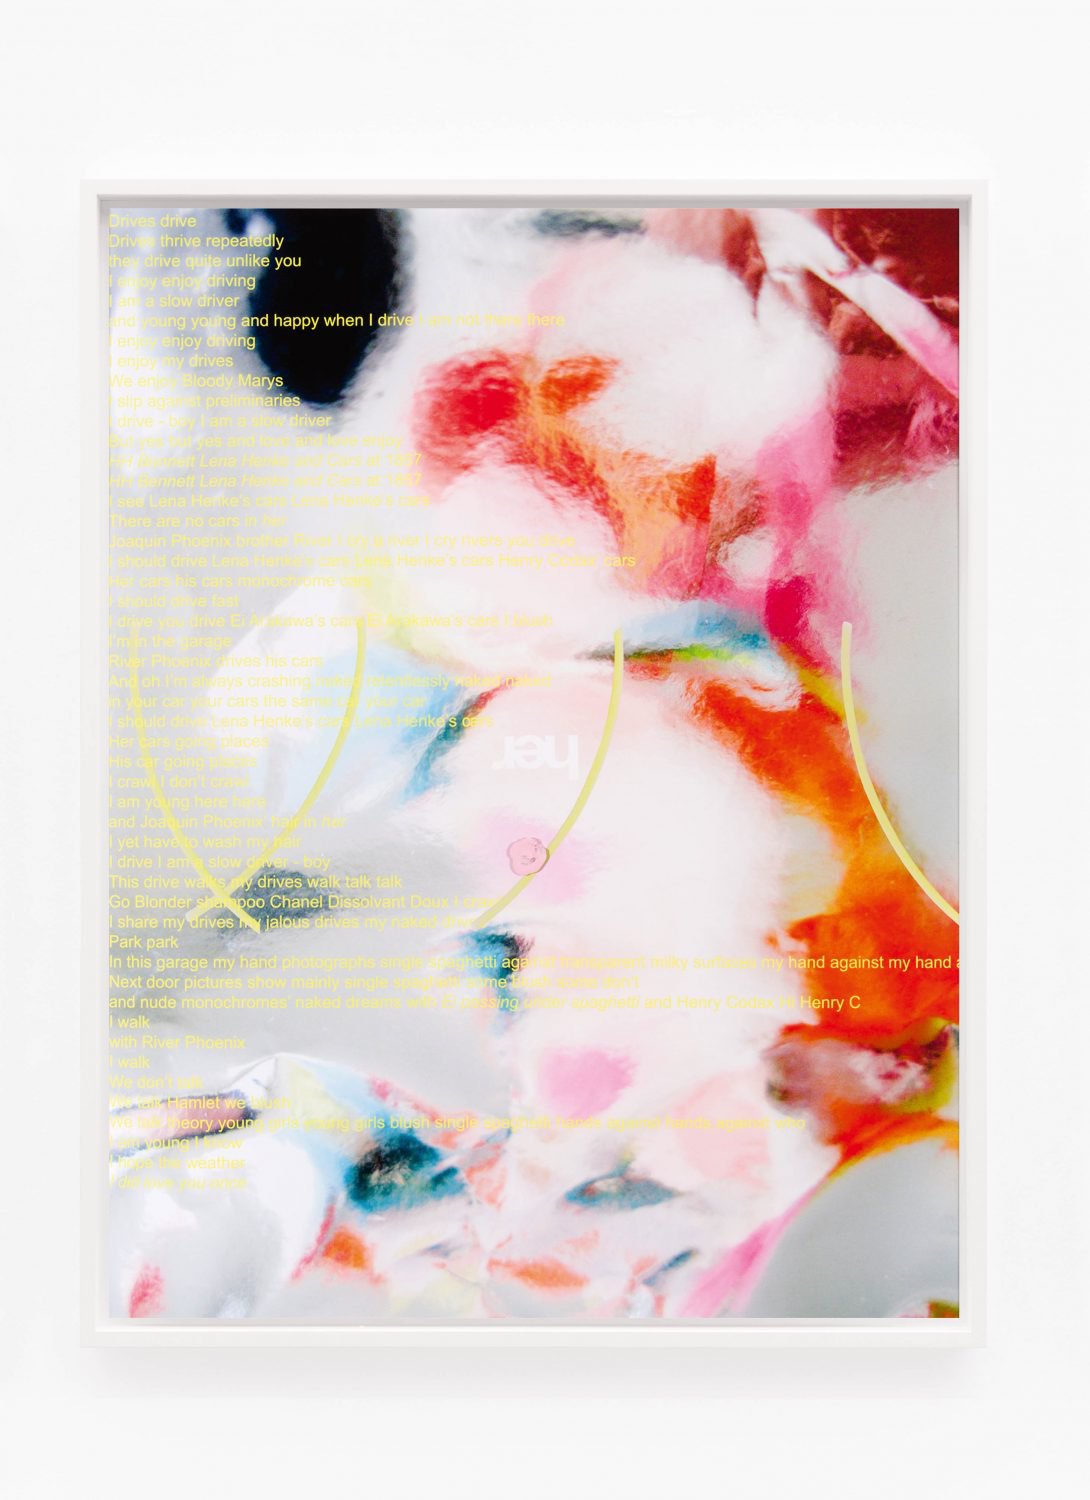 Lisa HolzerThe Garage Picture, 2014Pigmentprint on cotton paper, Finger paint Tactil color92 x 72 cm